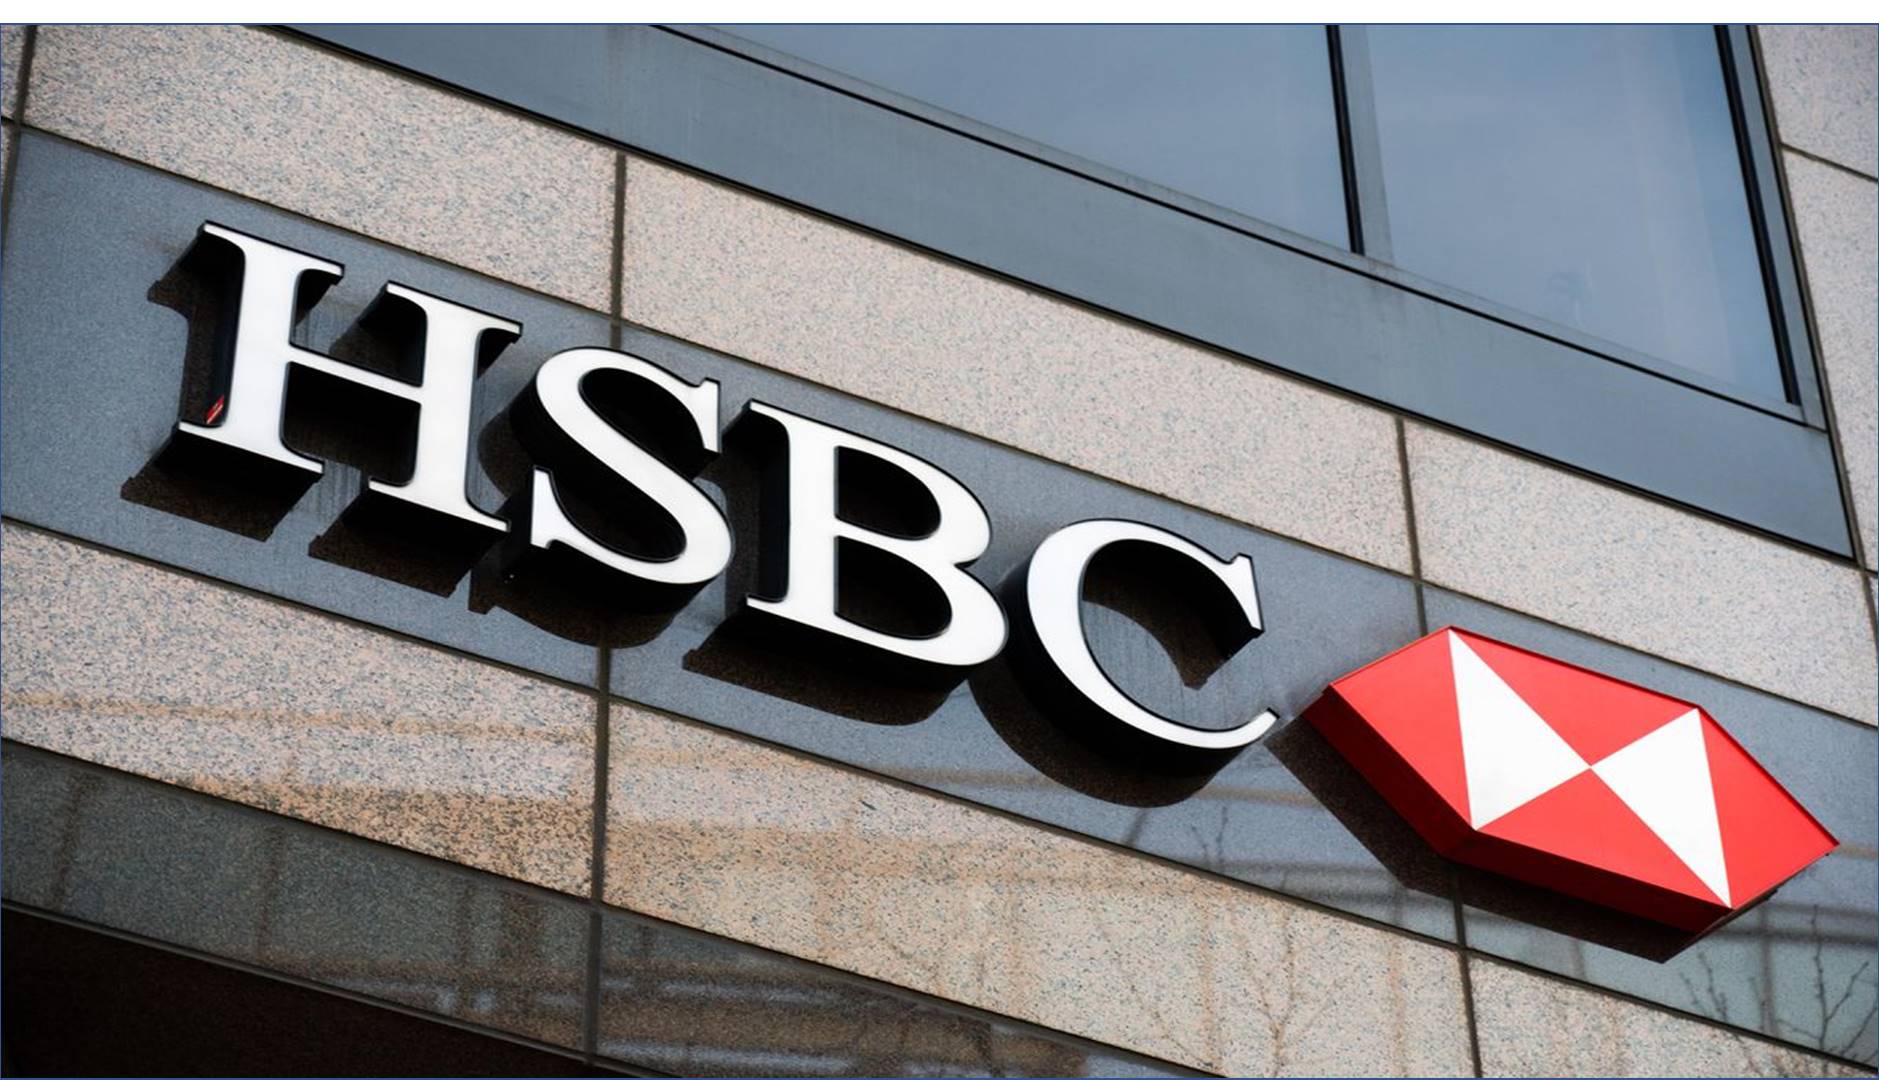 بنك HSBC السعودية يبدأ استقبال طلبات التقديم ببرنامج الخريجين المنتهي بالتوظيف 2023 وينشر “الشروط وطريقة التقديم”